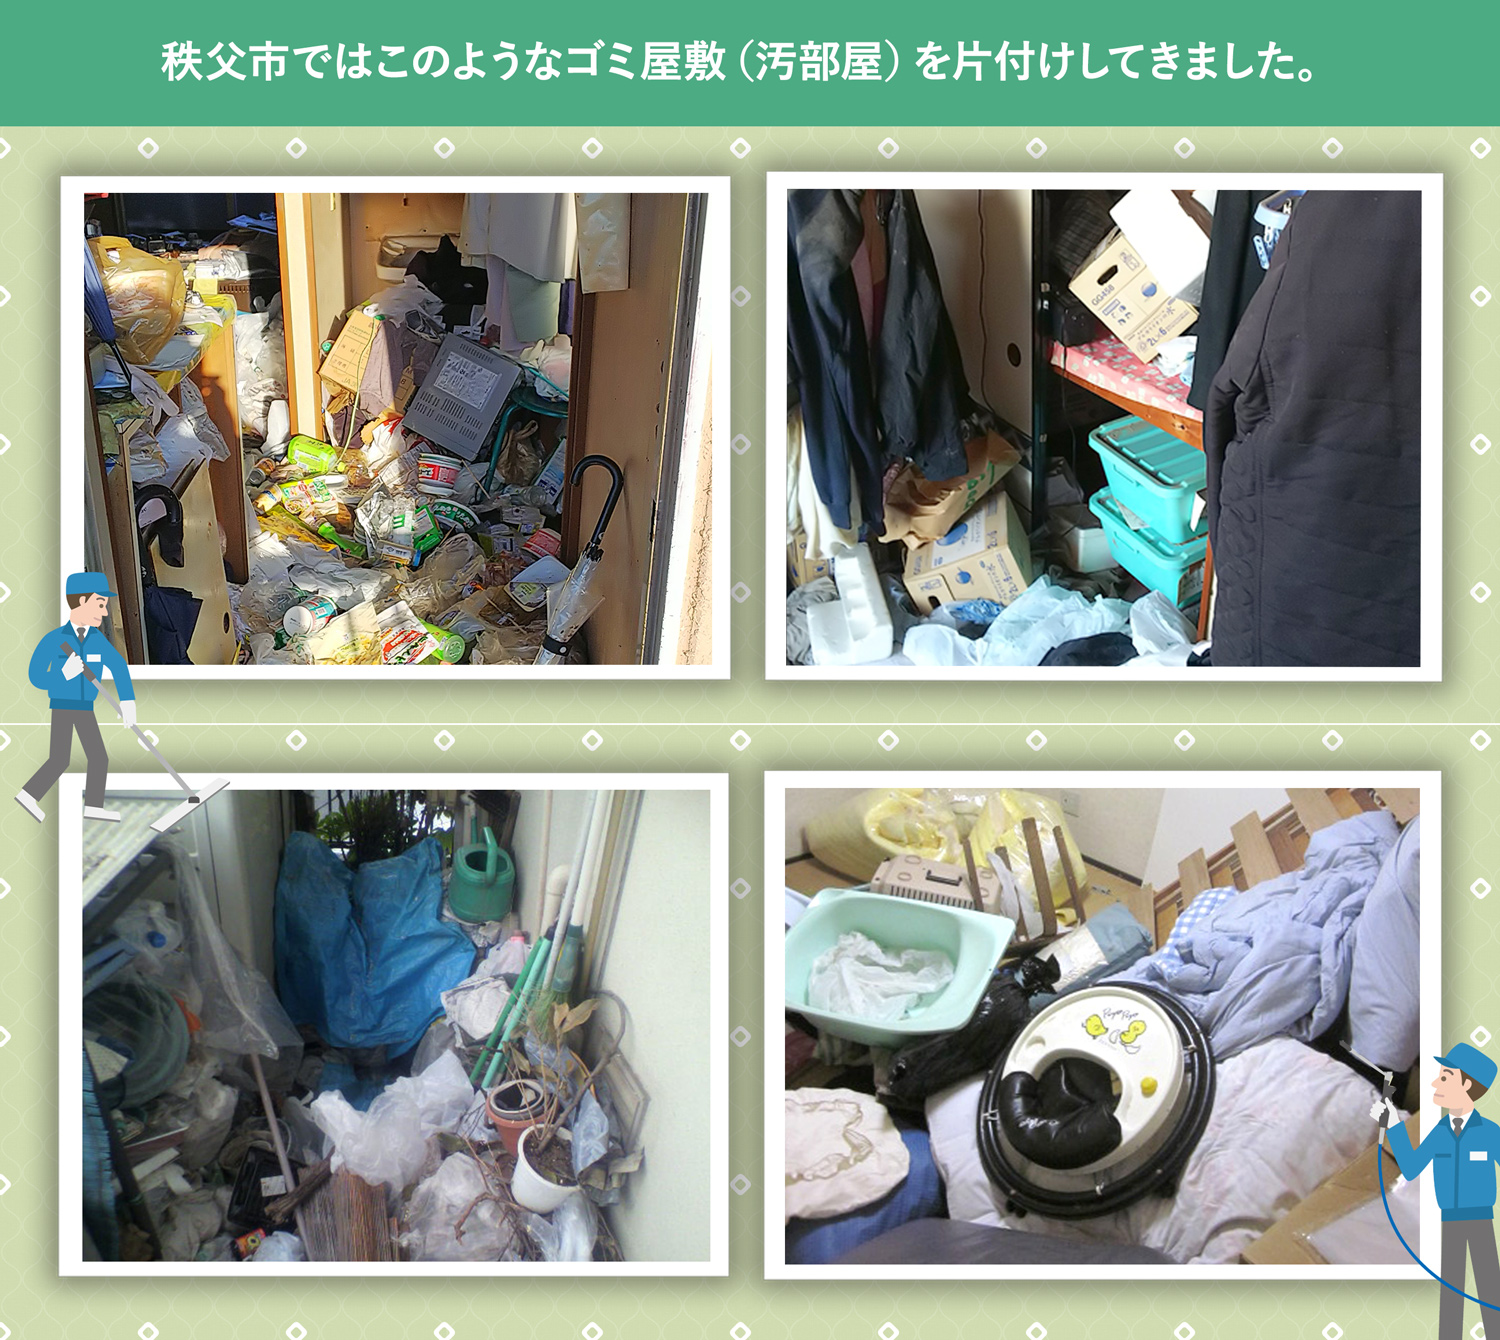 秩父市で行ったで行ったごみ屋敷・汚部屋の片付けの一例